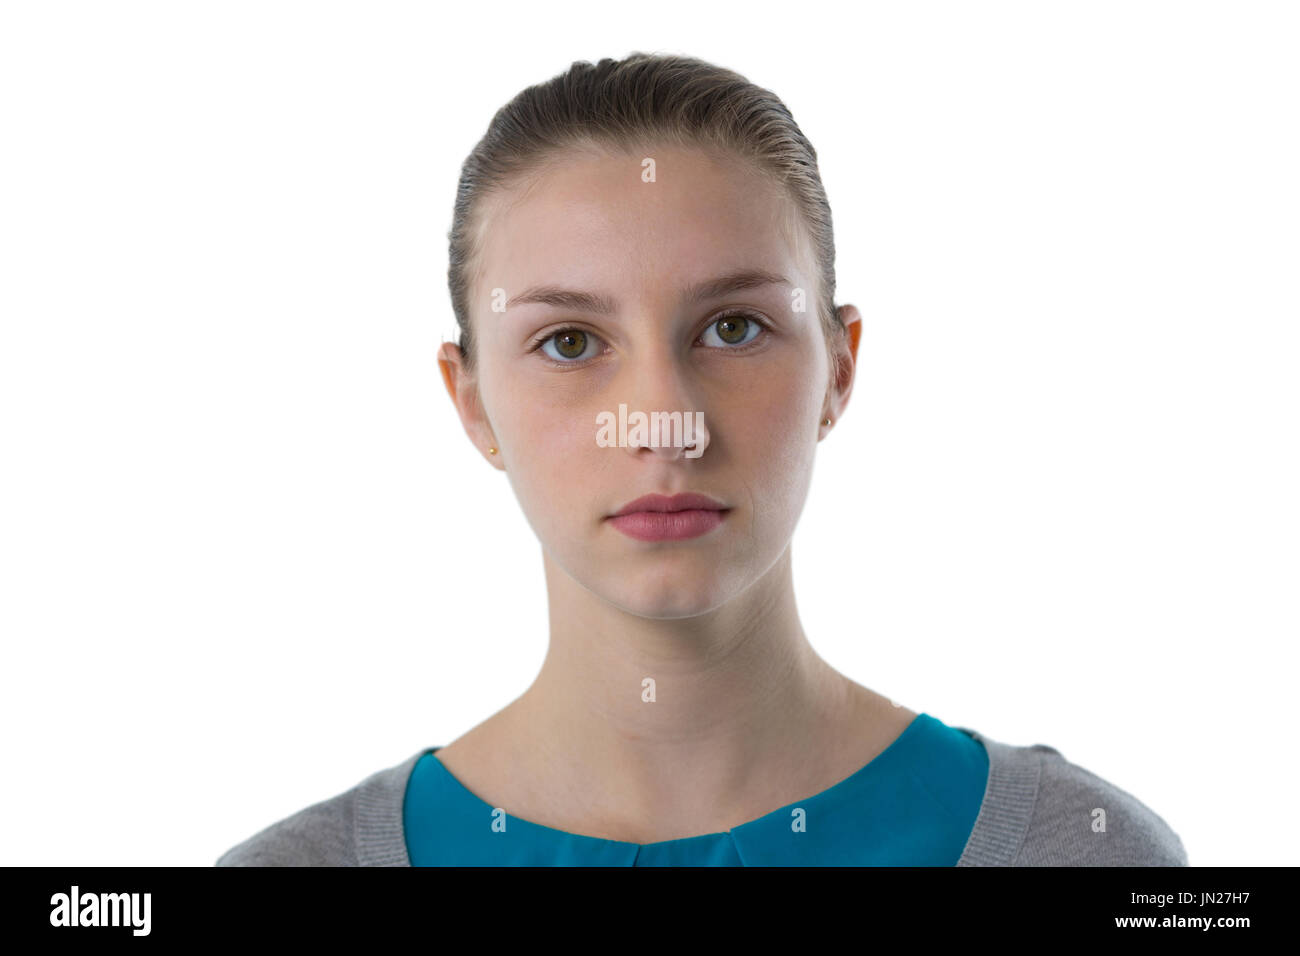 Ritratto di fiducioso ragazza adolescente in piedi contro uno sfondo bianco Foto Stock